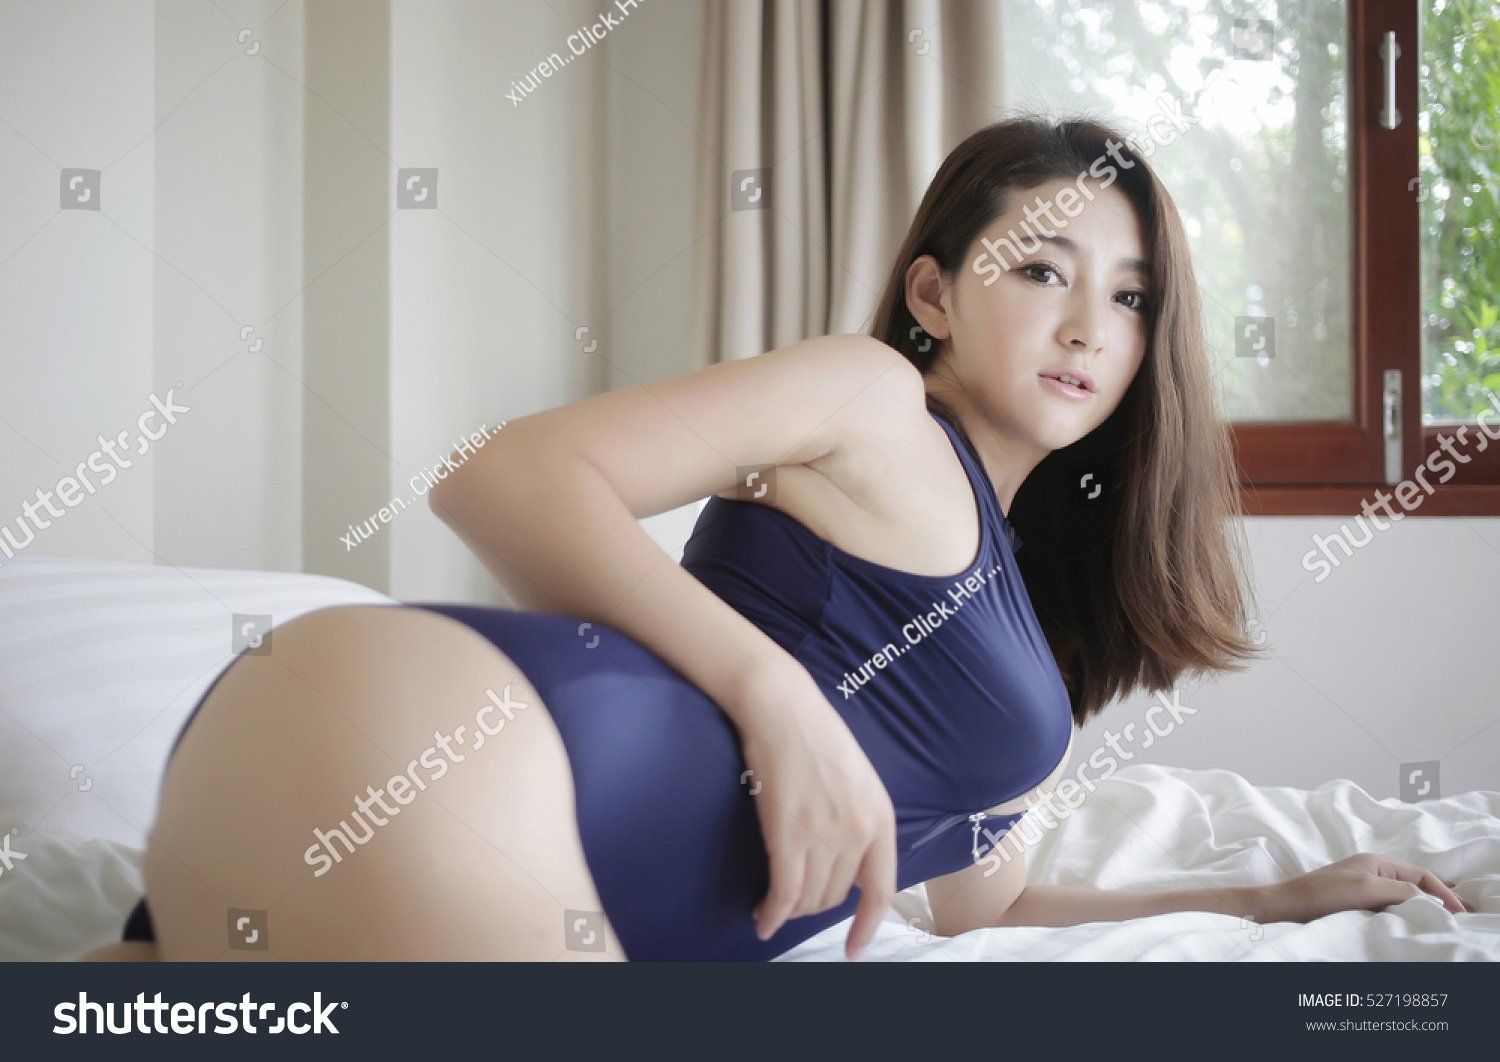 Sexy girl big boobs sex position